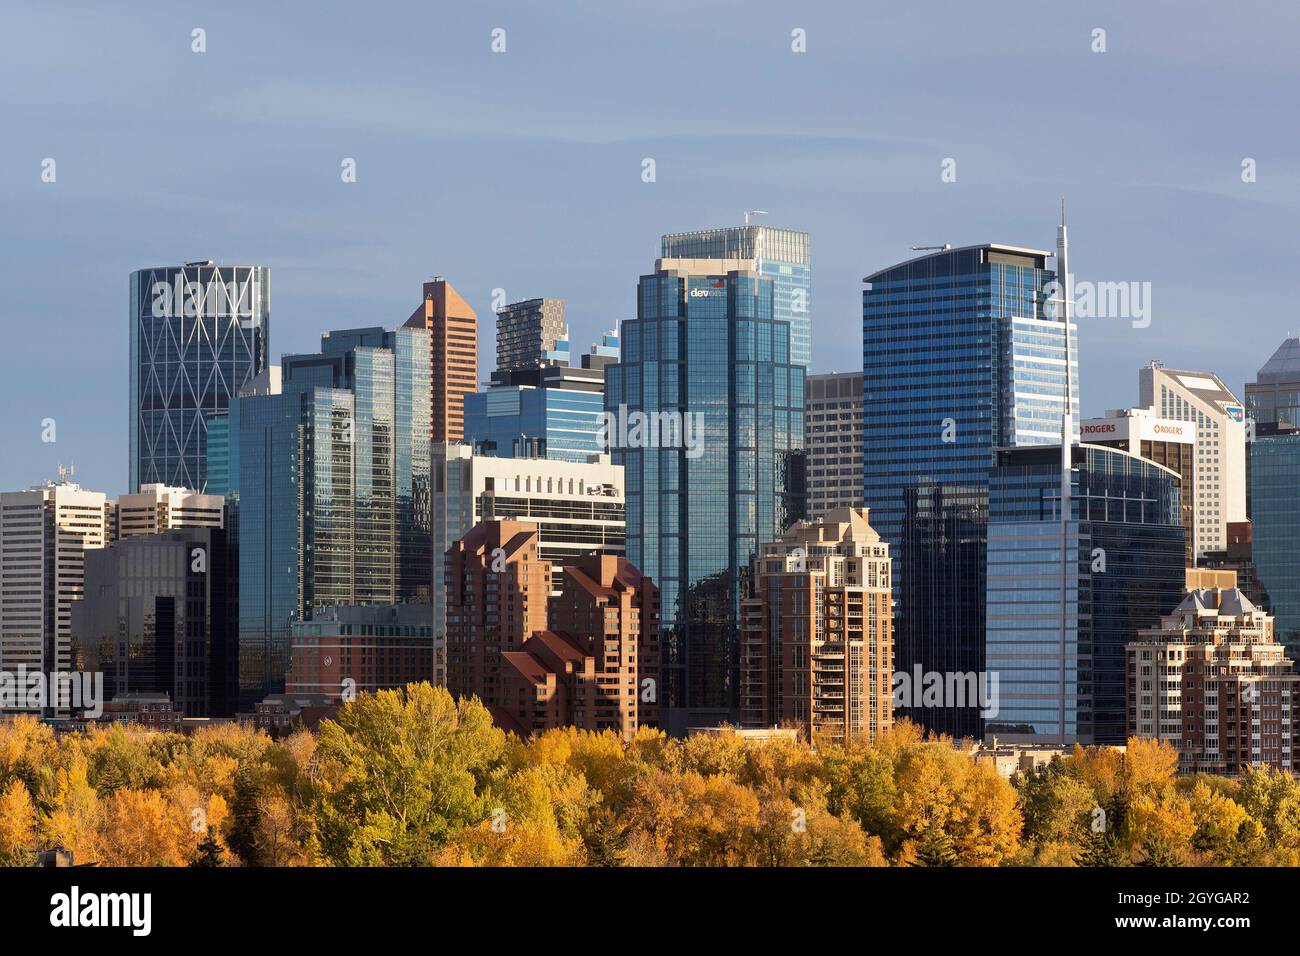 Stadtbild von Calgary mit Wolkenkratzern in der Innenstadt und Bäumen im Herbstlaub Stockfoto